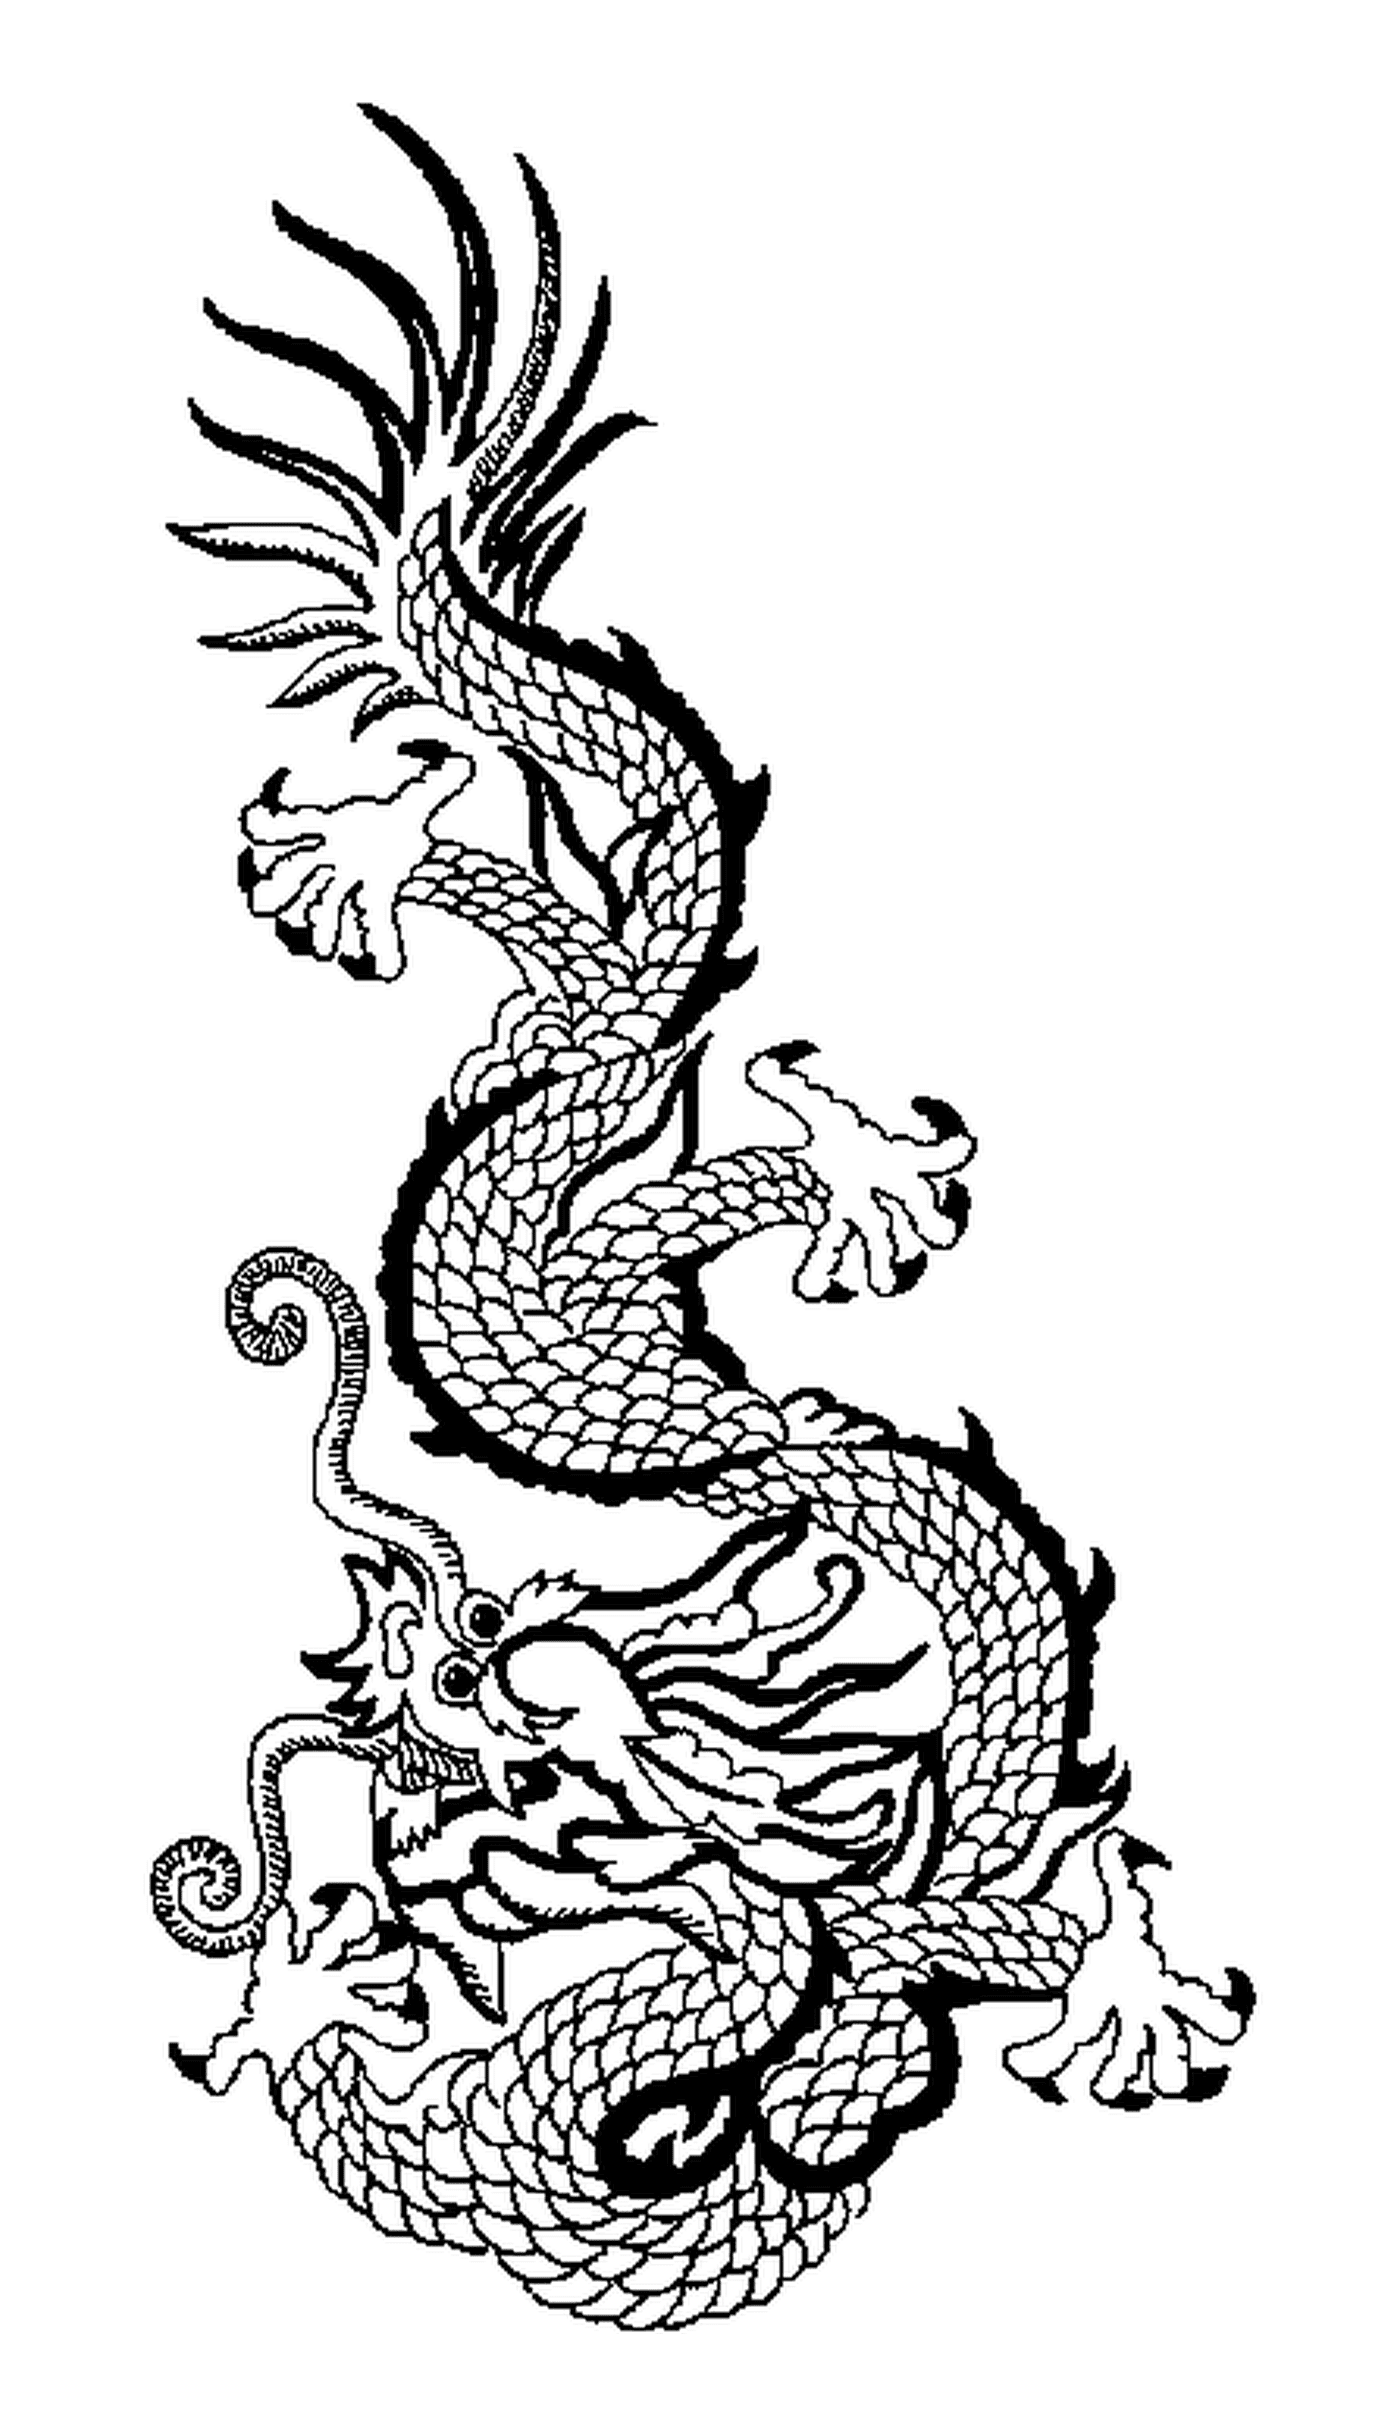  Un drago cinese 